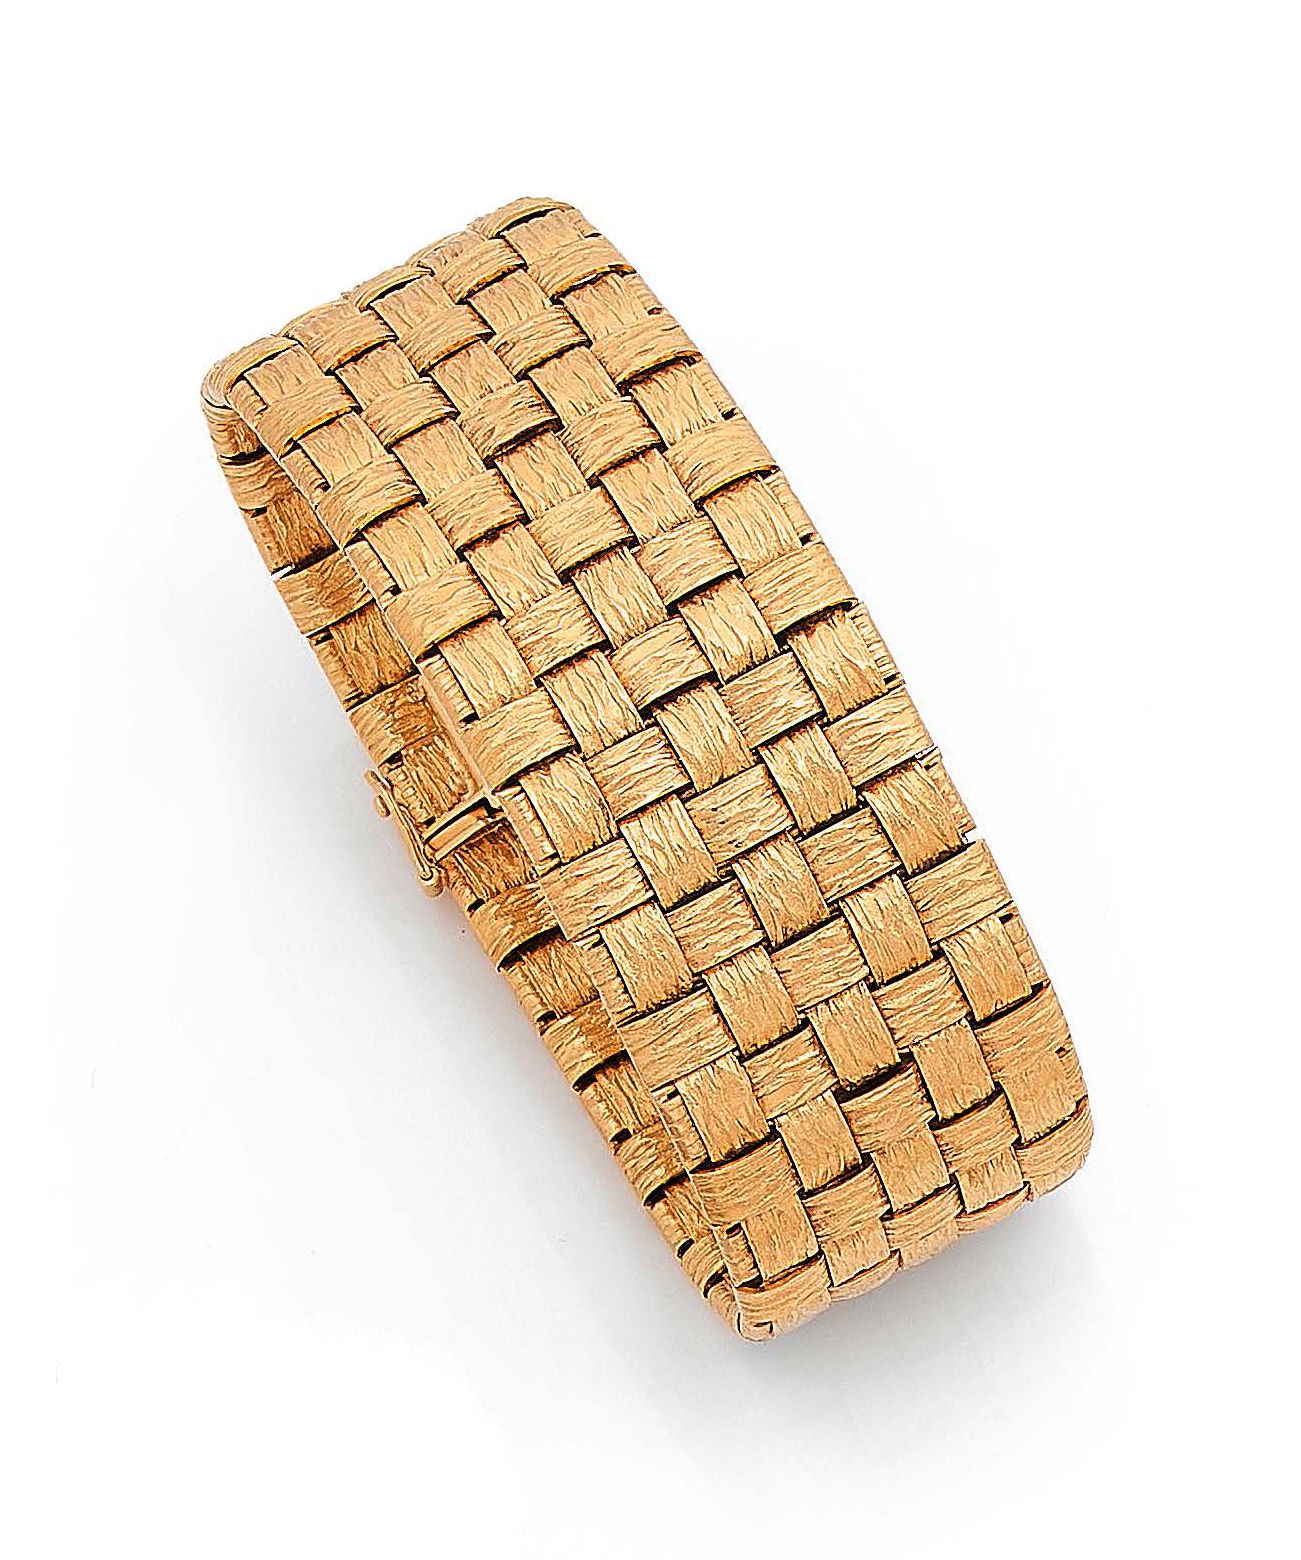 Null 黄金(750)带状手镯，有纹理的篮子编织设计。
棘轮扣，带双保险八字。
重量：99.1克。
长度：19.2厘米。- 宽度：2.6厘米。